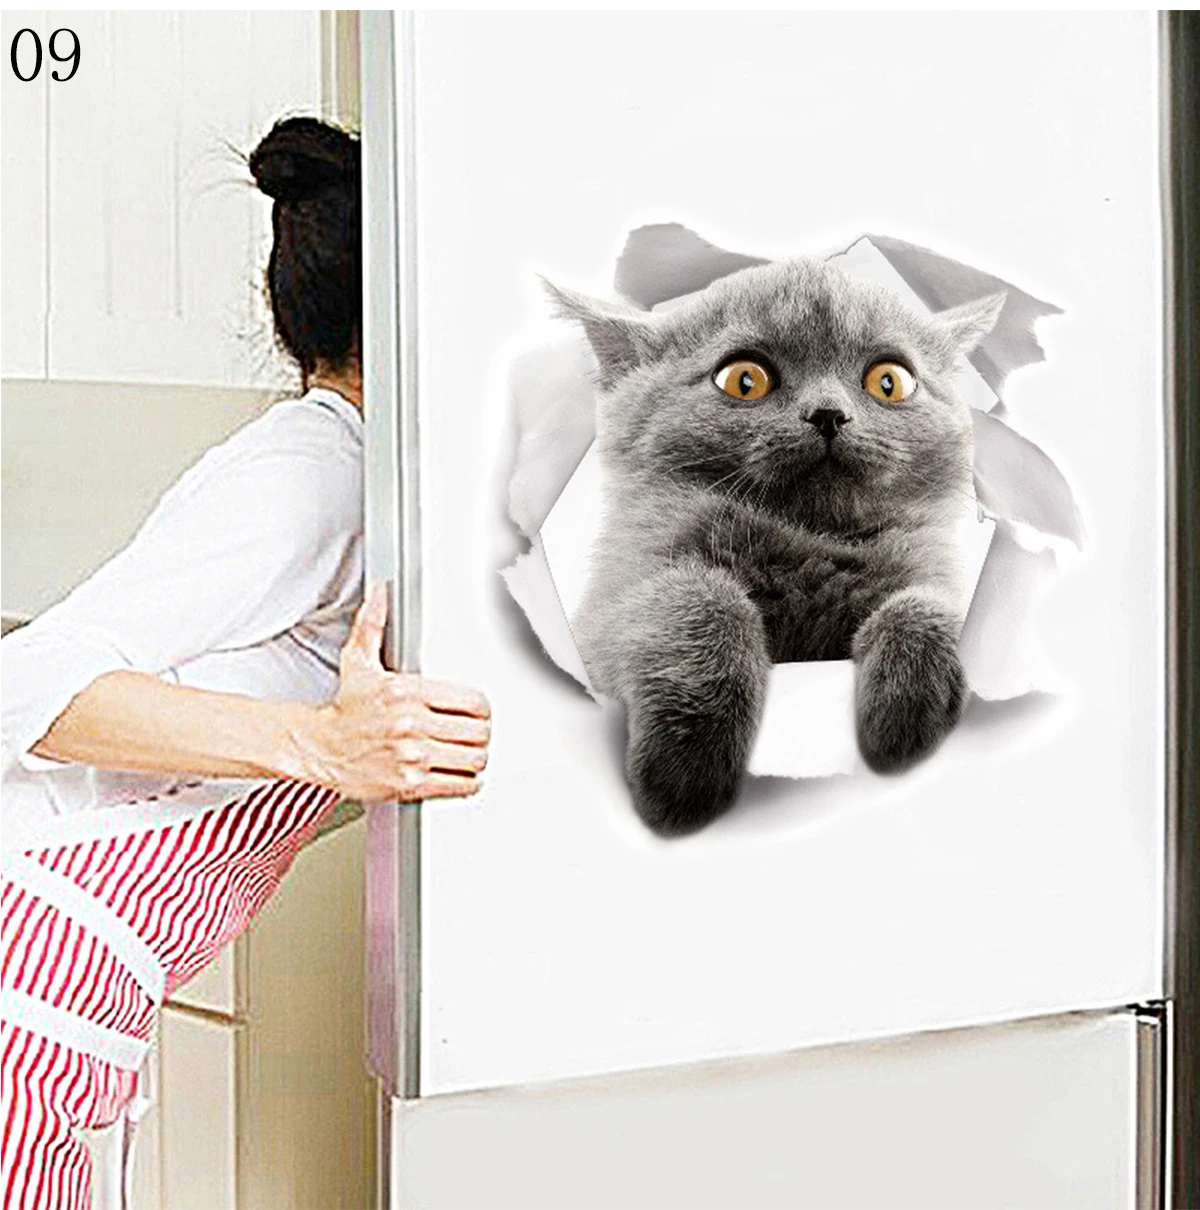 Мультяшные животные 3d наклейки для туалета s на сиденье для унитаза милые кошки ПВХ наклейки на стену ванная комната холодильник дверь Декор наклейки s наклейки